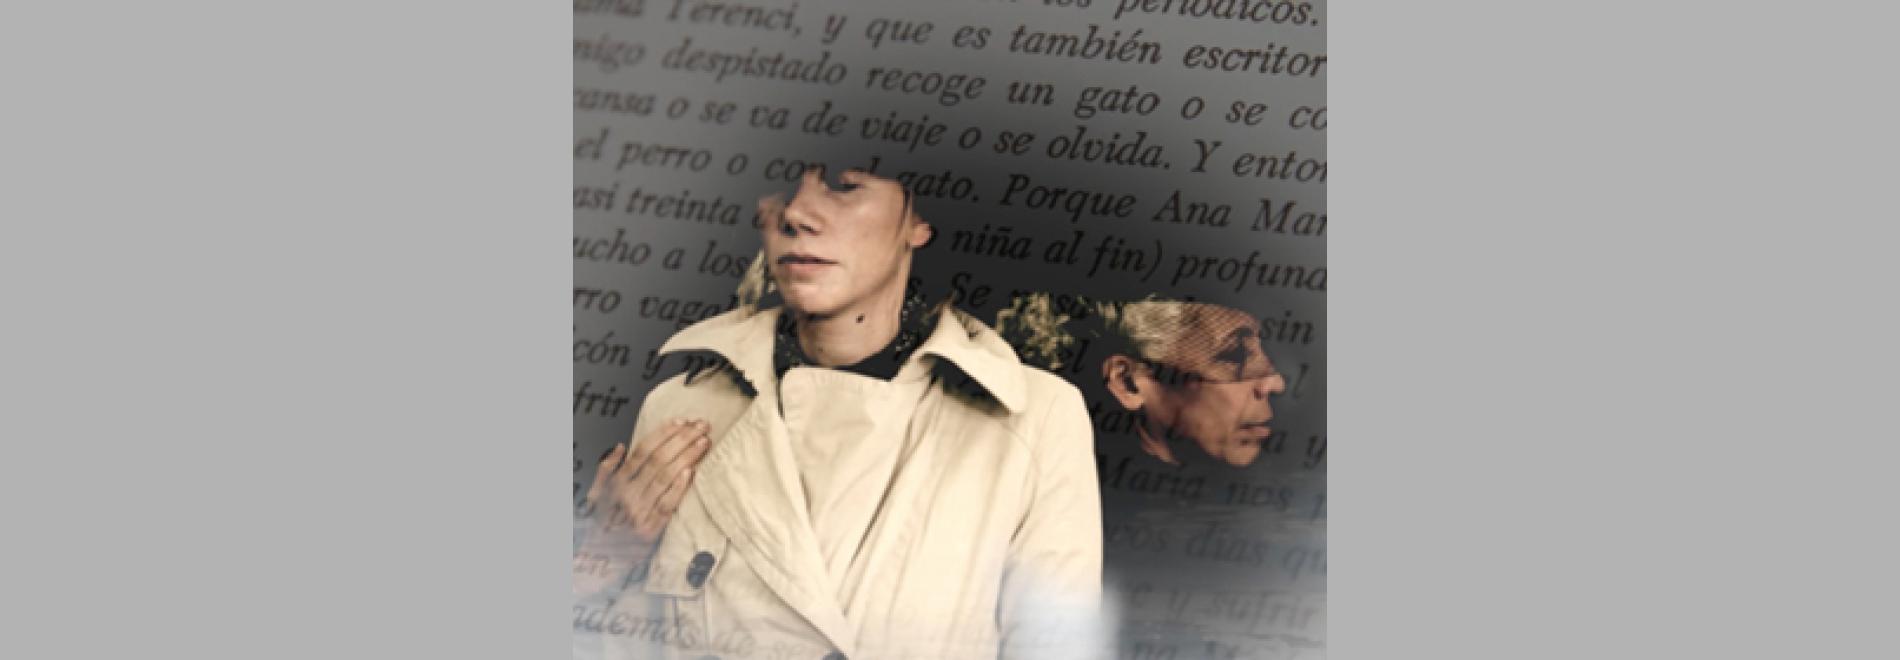 Ana María Moix o la passió per la paraula (Anastasi Rinos Martí, 2015)